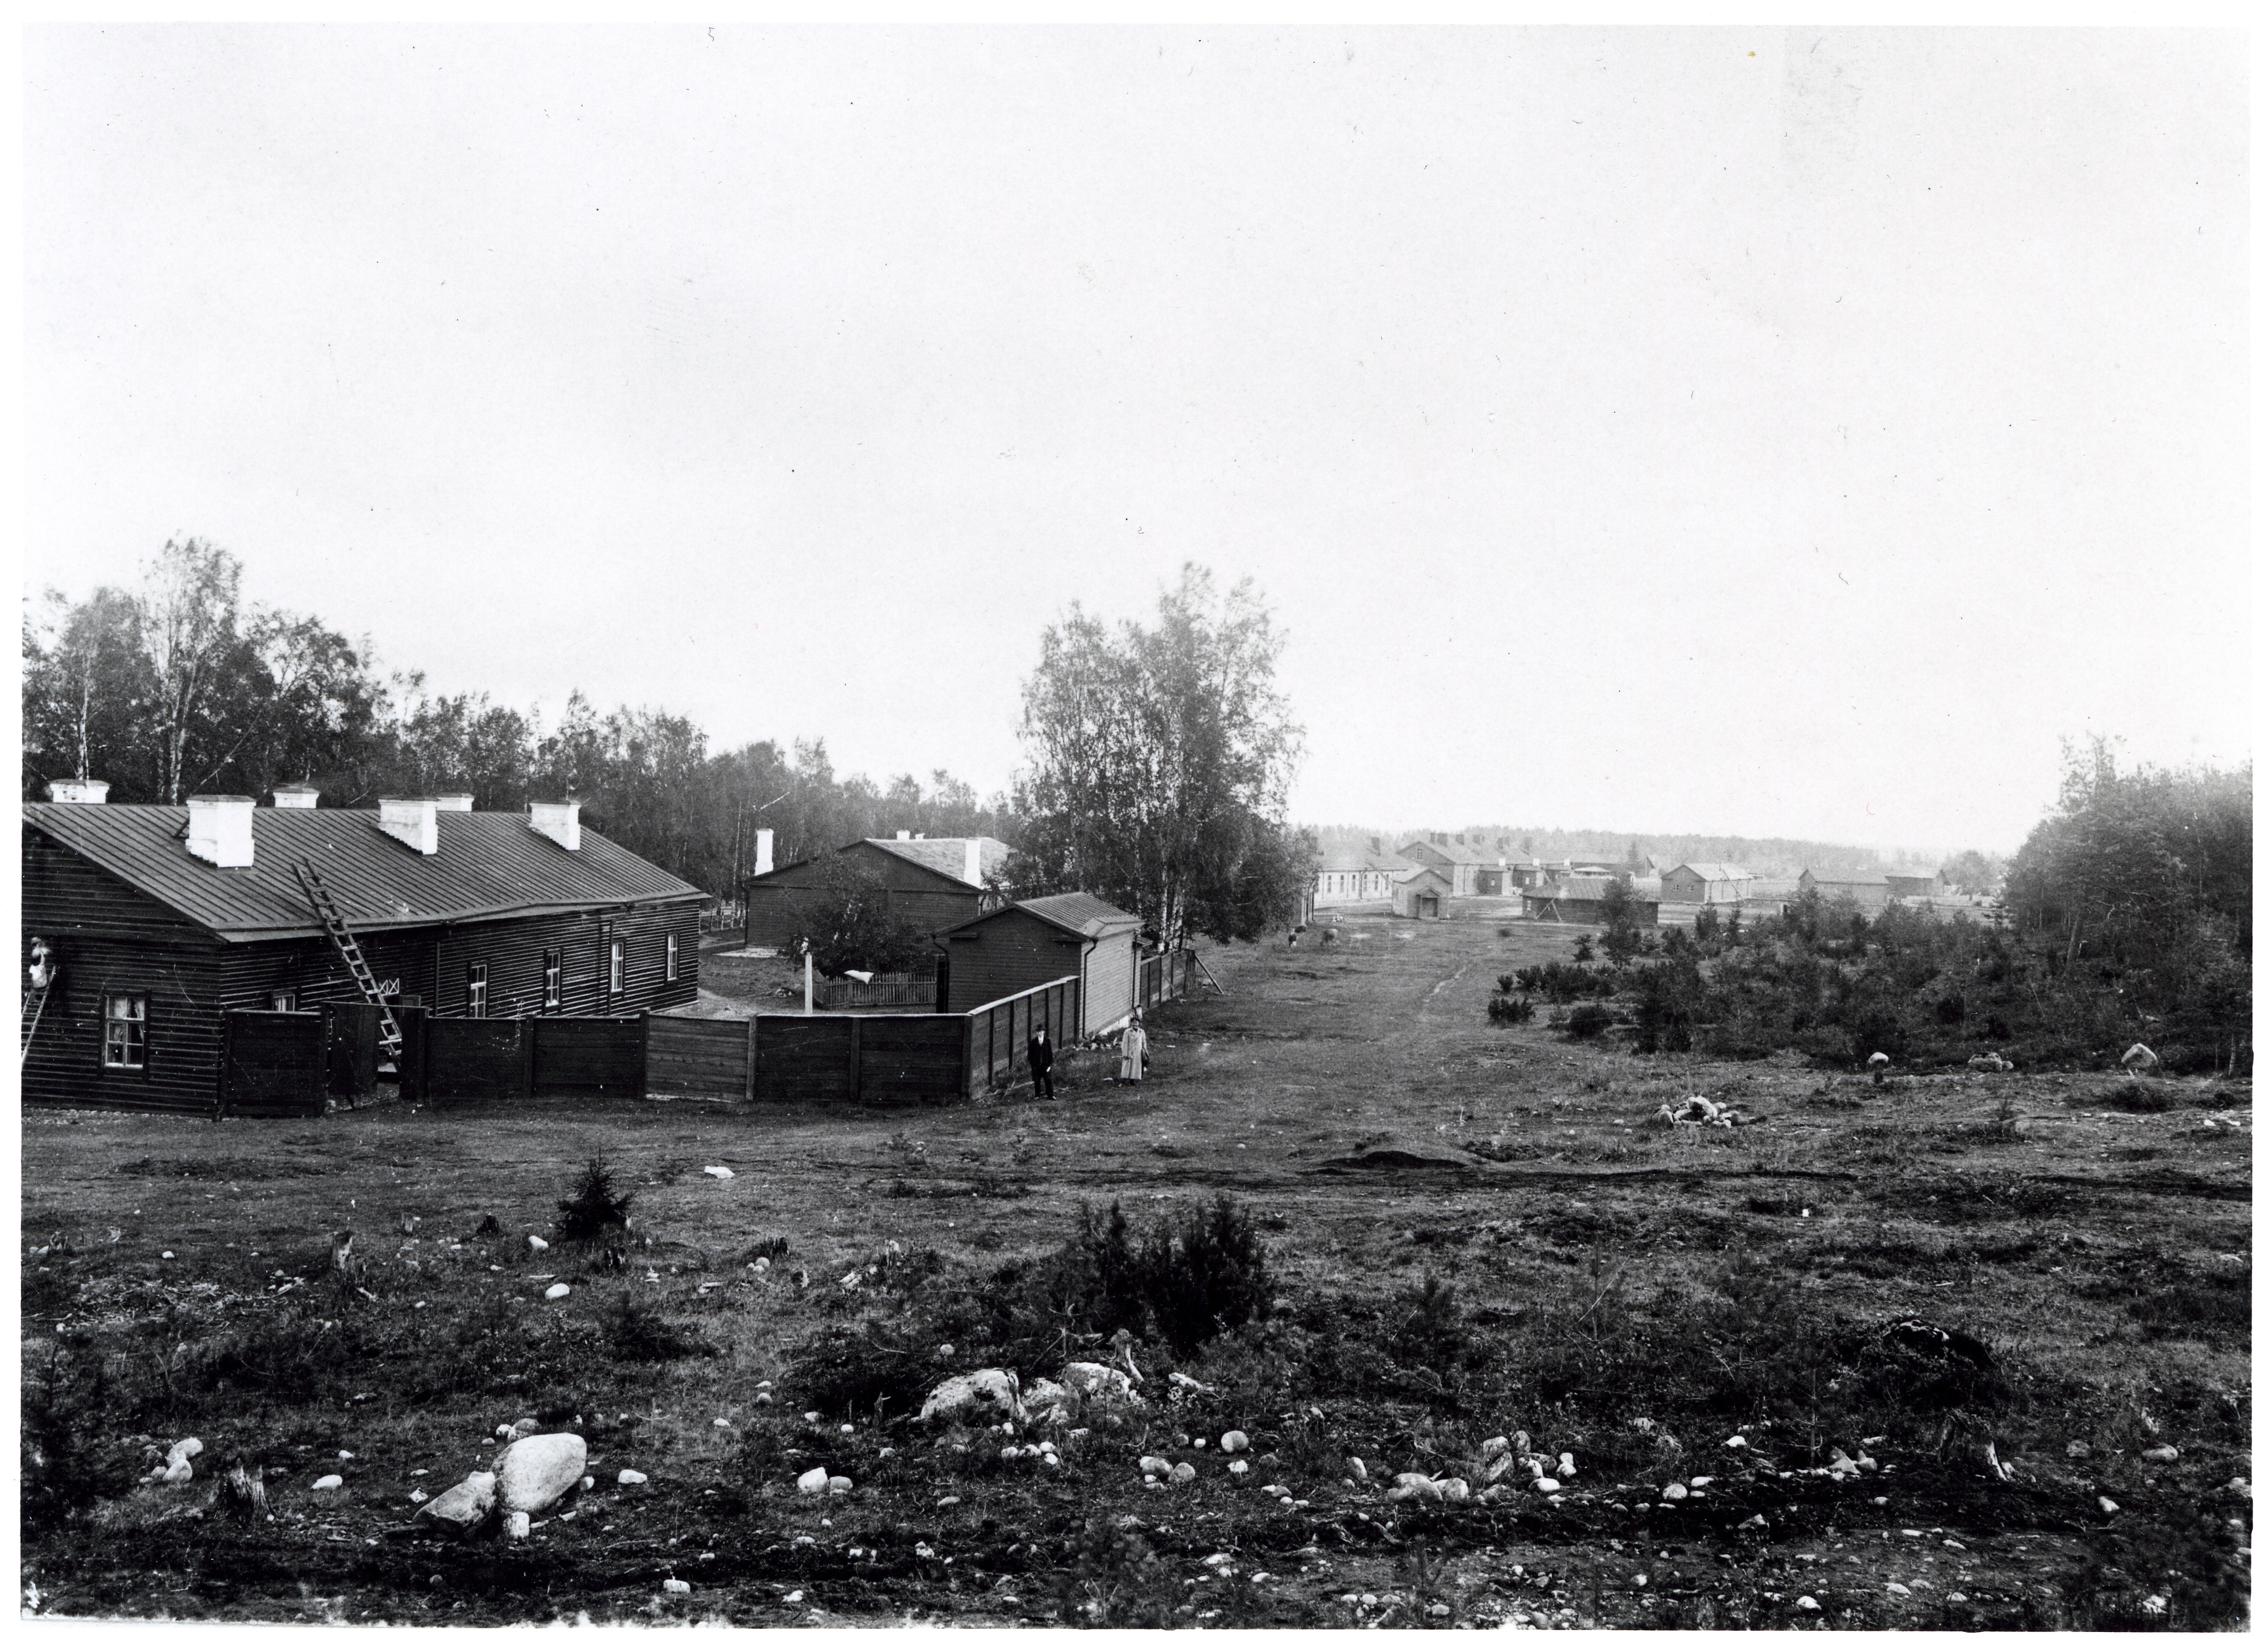 Näkymä Hyrylän ortodoksikirkon työmaalta kohti varuskuntaa vuonna 1899. Aukean päässä näkyy vaaleana Rakennus 10, vuonna 1862 rakennettu miehistökasarmi, joka on nykyisin Järvenpääntien varrella.